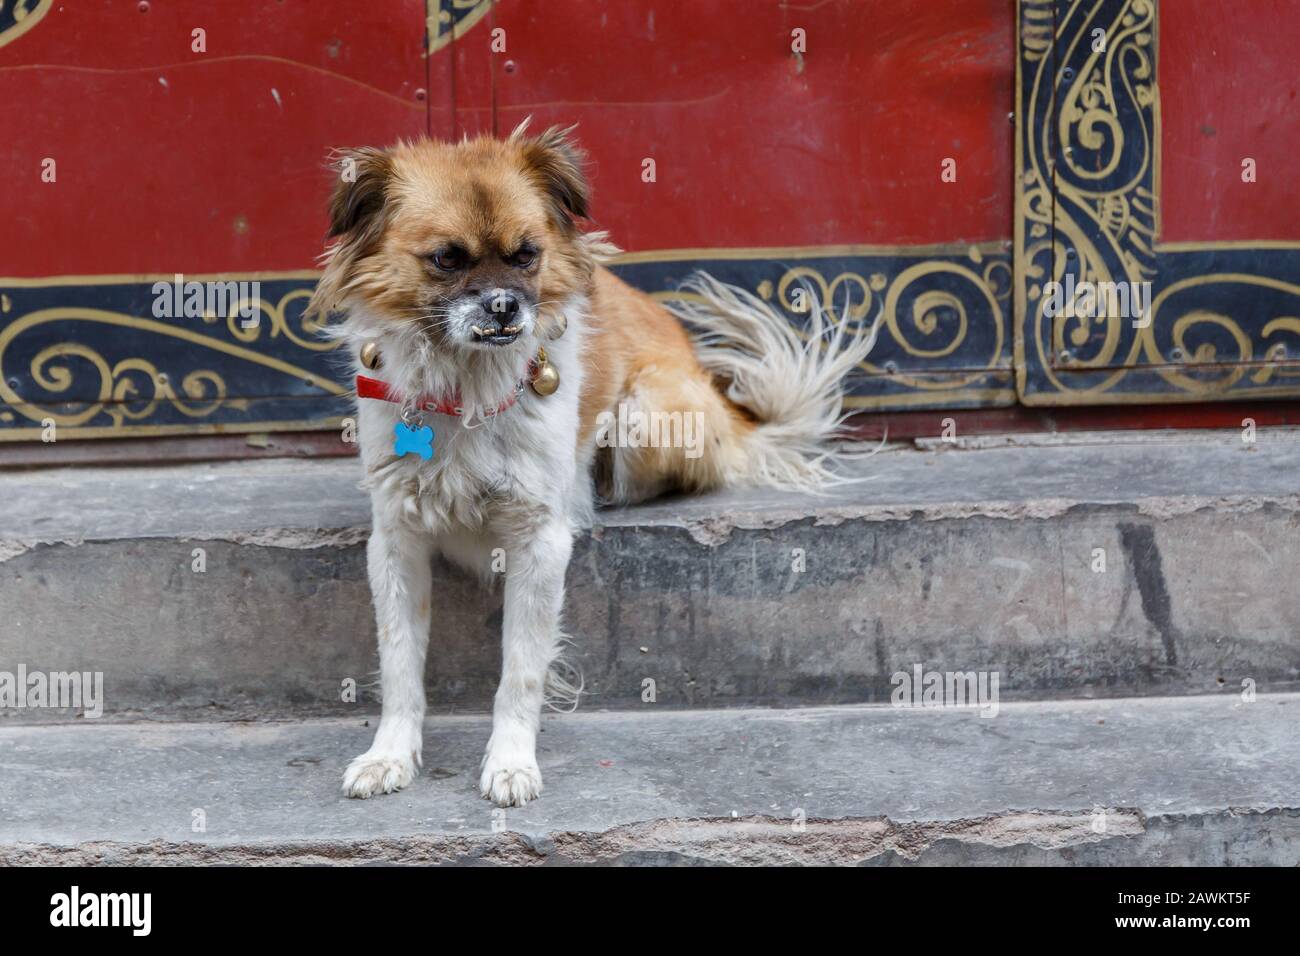 Porträt eines mongren Hundes mit Überbiss. Sein Gesicht wirkt grimmig und unglücklich. Ausgestreckte Vorderfüße. Weißes und schwarzes Fell. Caputured in den Straßen von Lhasa Stockfoto